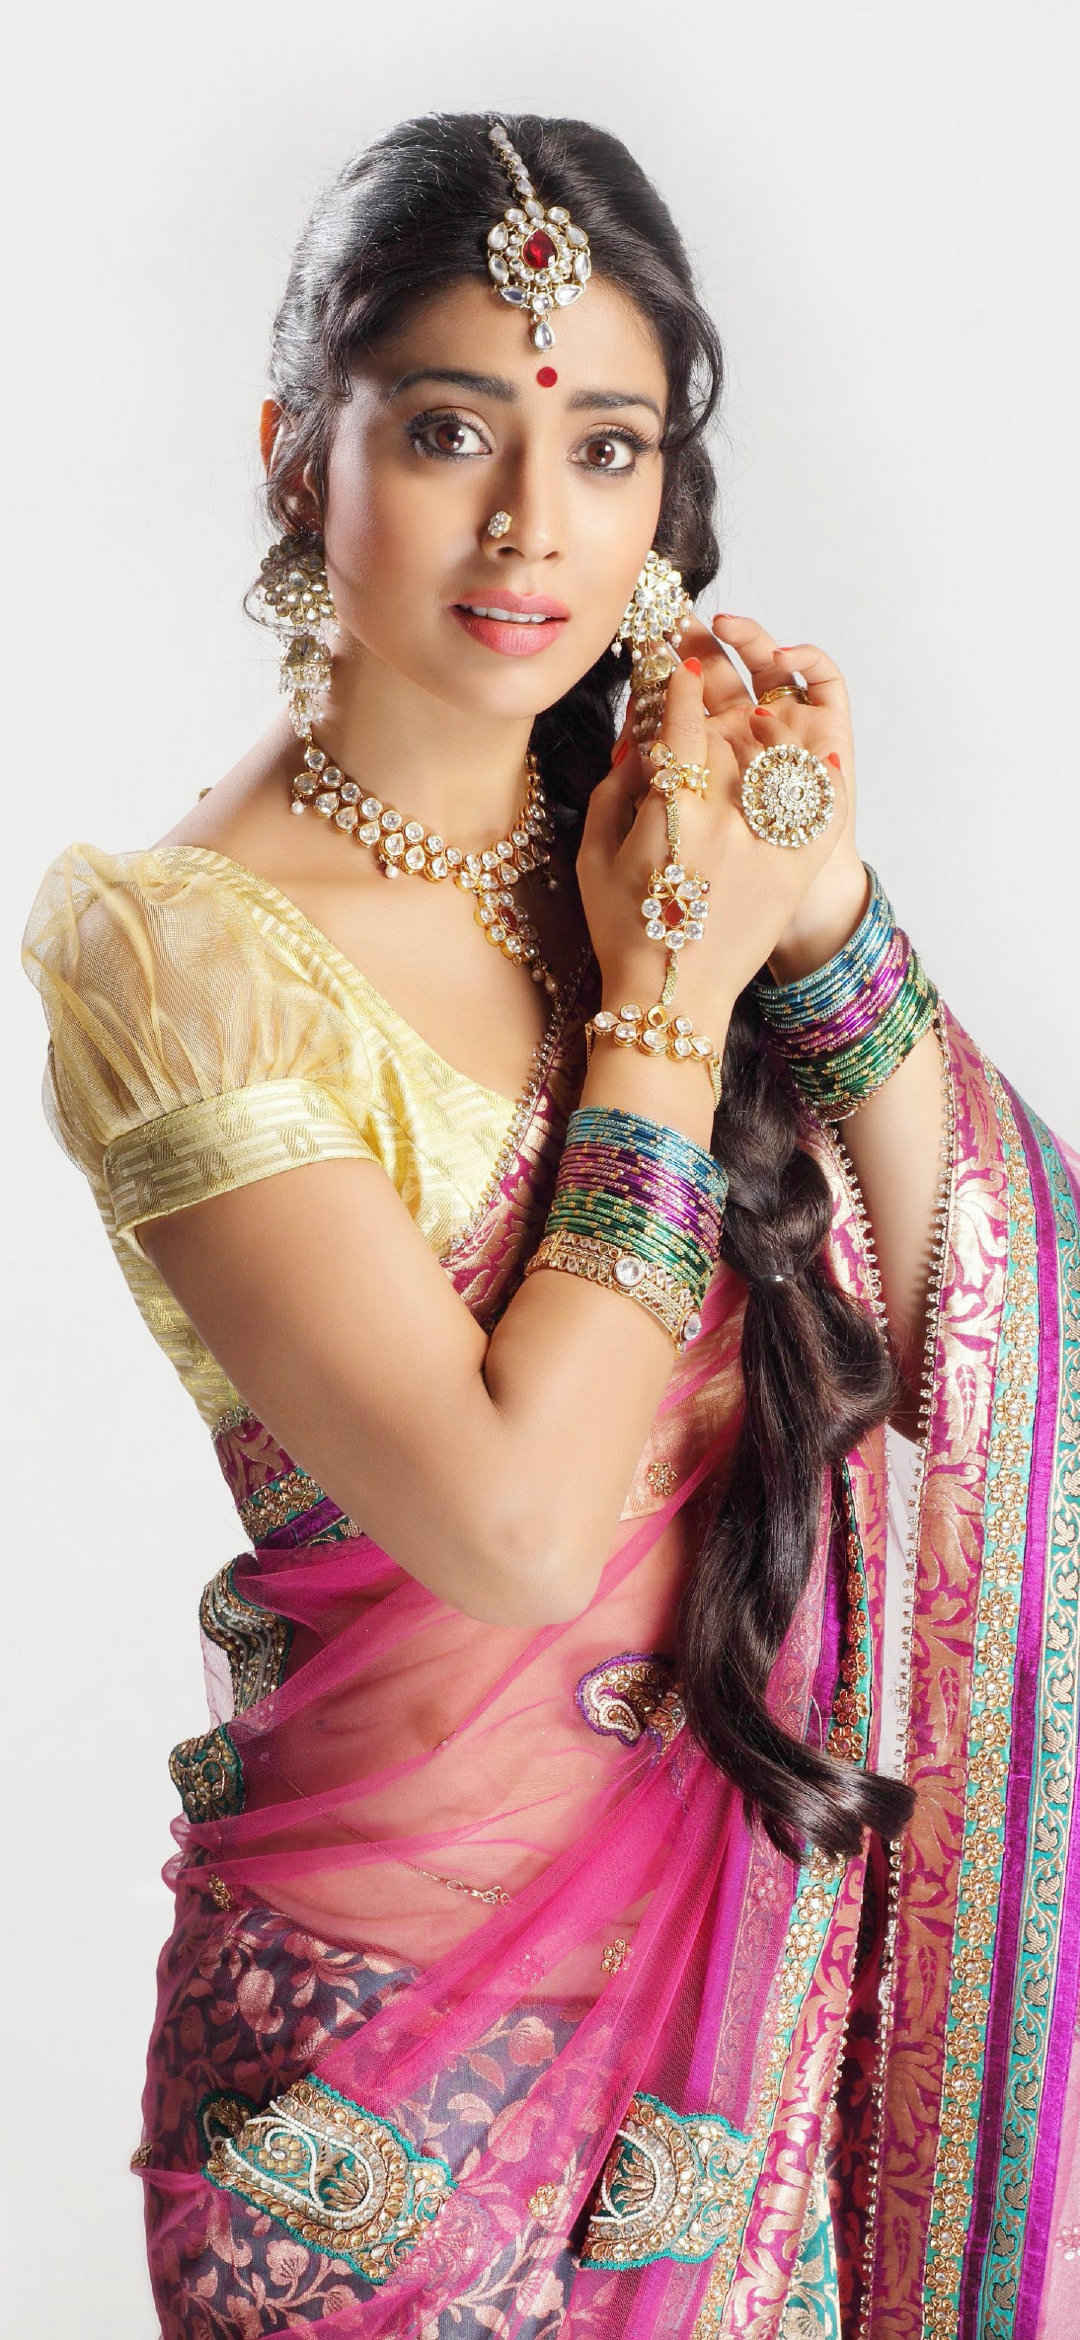 身着印度传统服饰的印度美女手机壁纸-